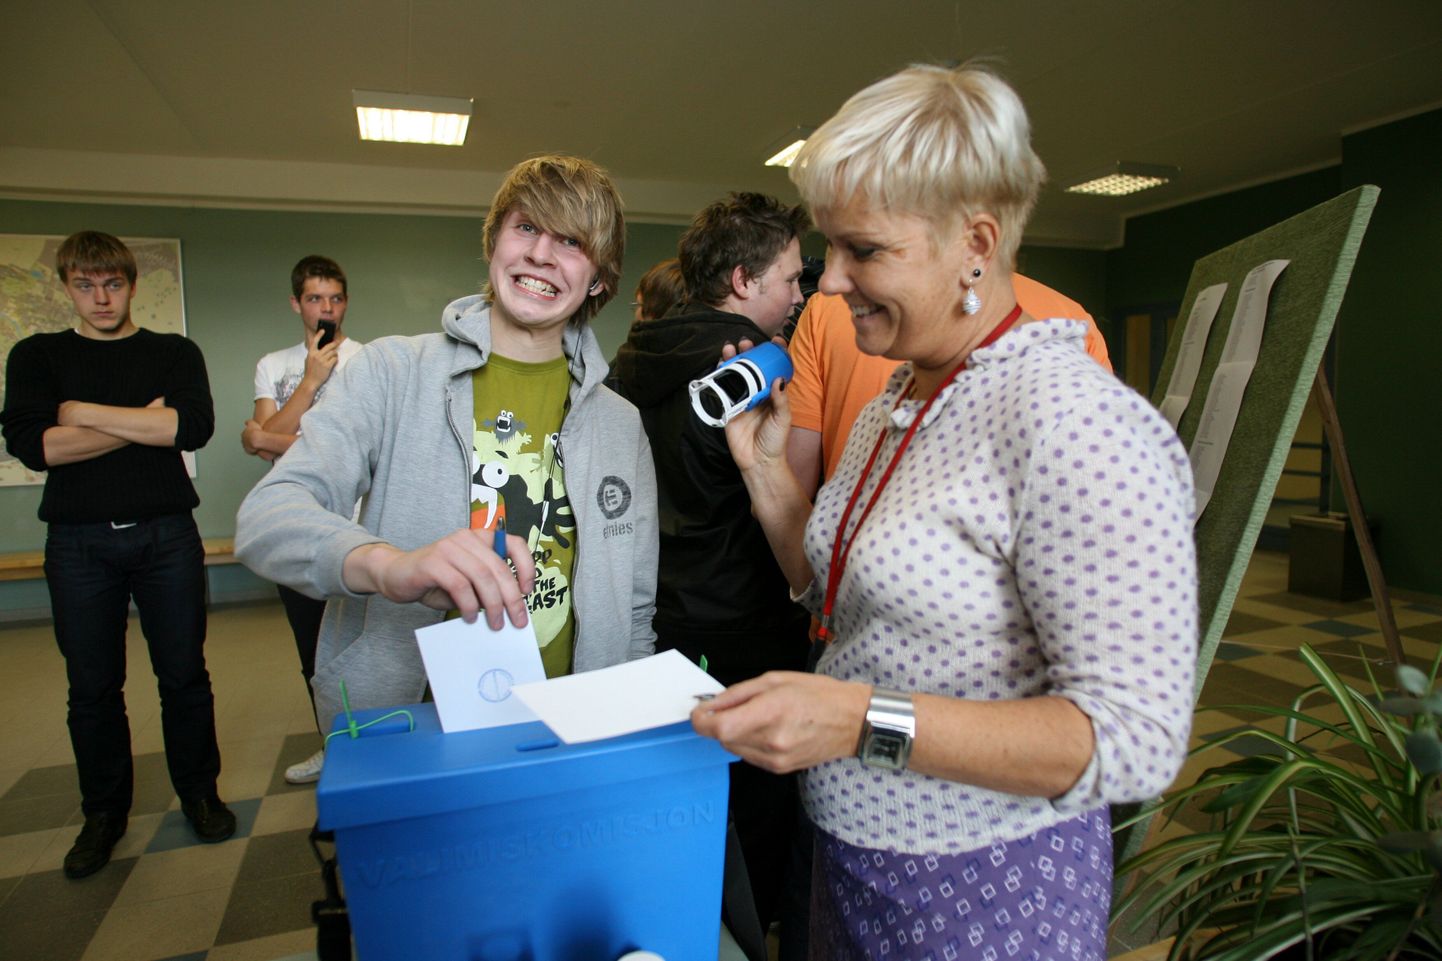 Pildistatud 6. oktoobril 2009.
Noorte varivalimised Kivilinna gümnaasiumis (pildil Martti Hallik ja Piret Arula).